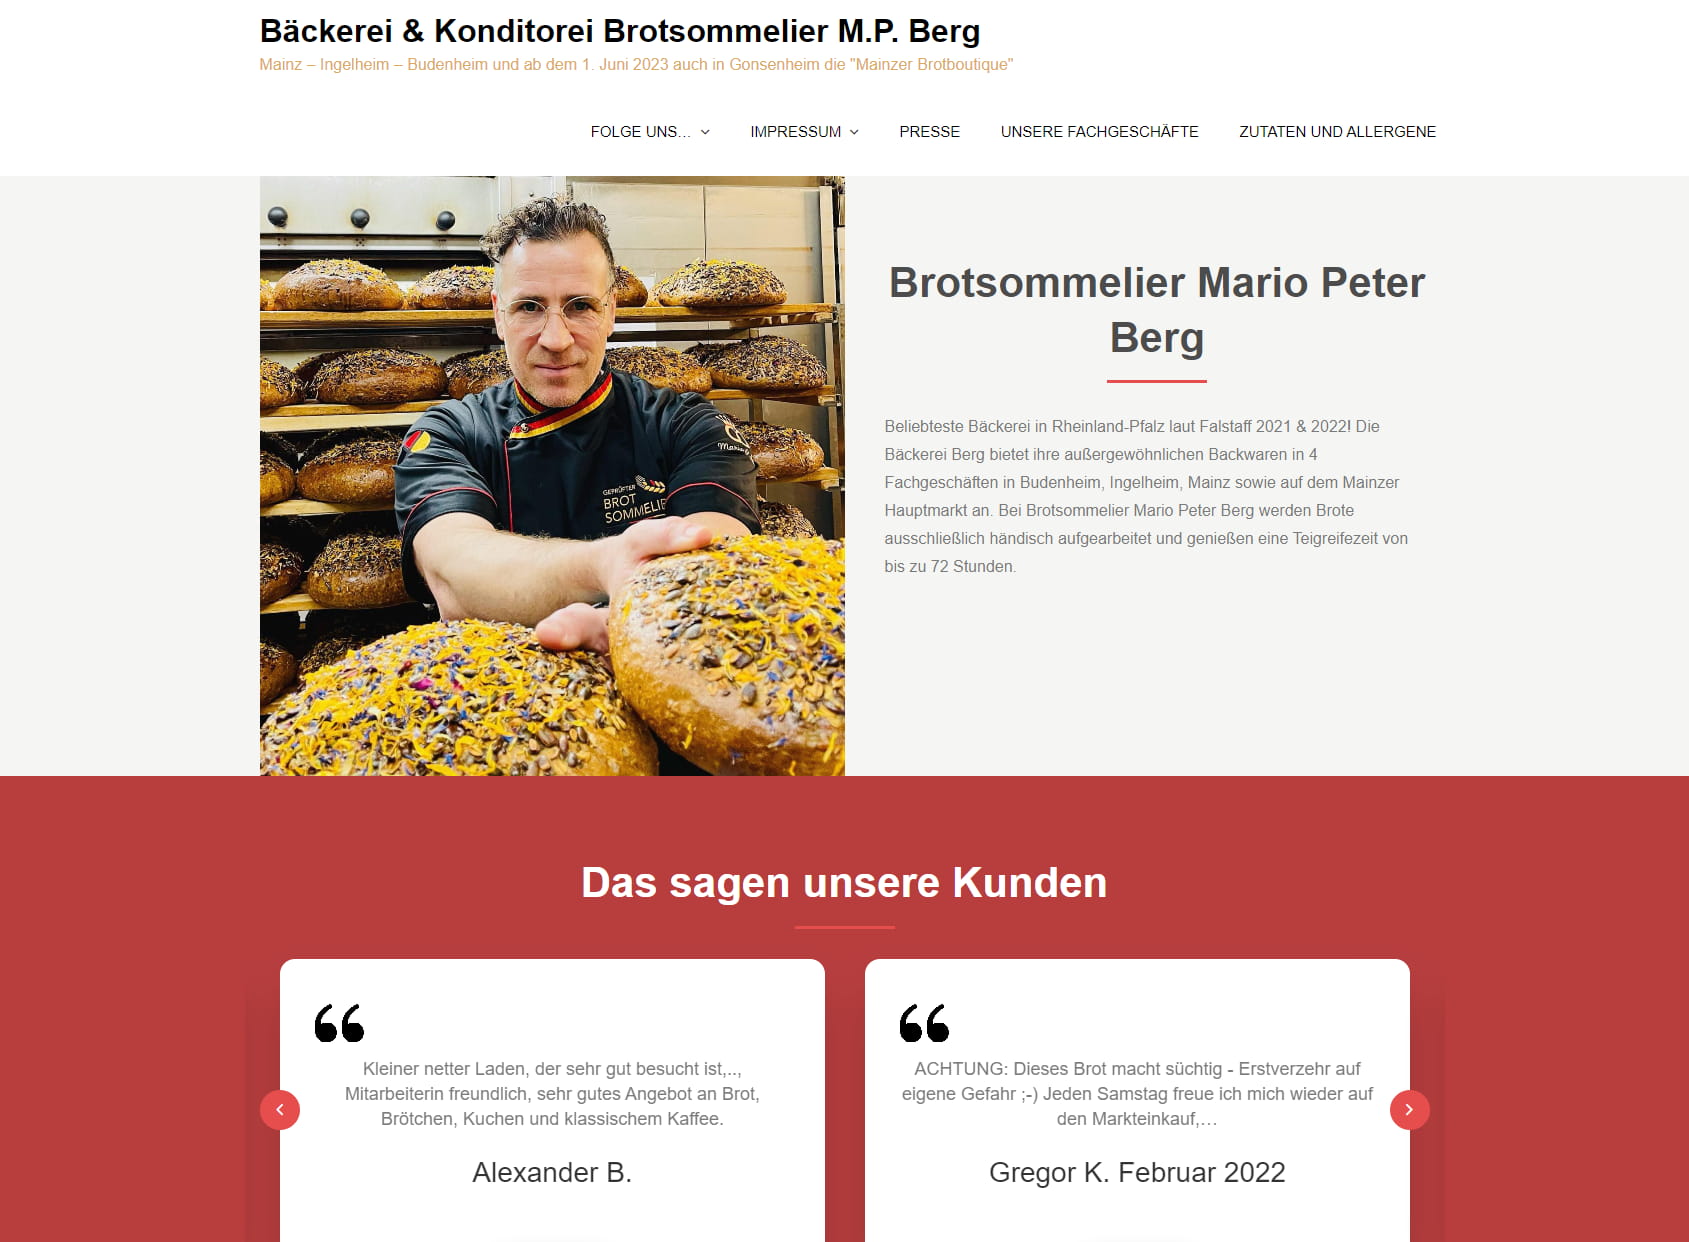 Bäckerei & Konditorei Bäckermeister & Brotsommelier Mario P. Berg